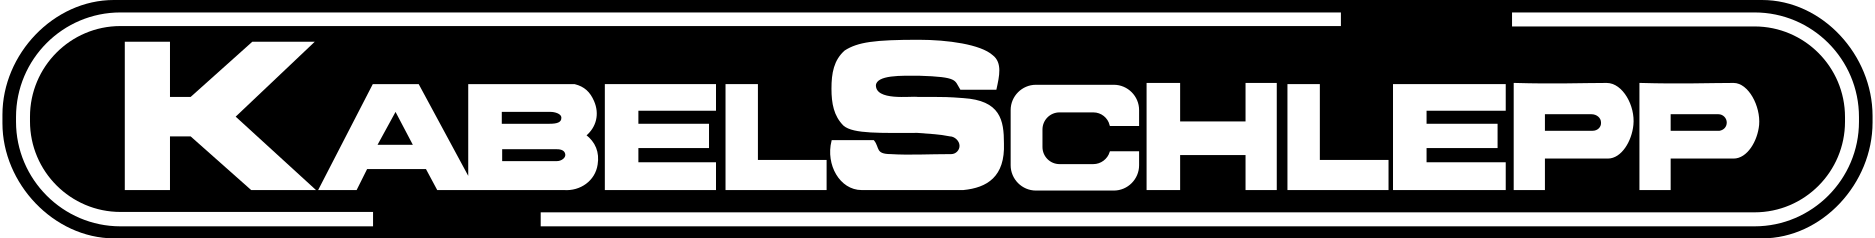 logo_KABELSCHLEPP